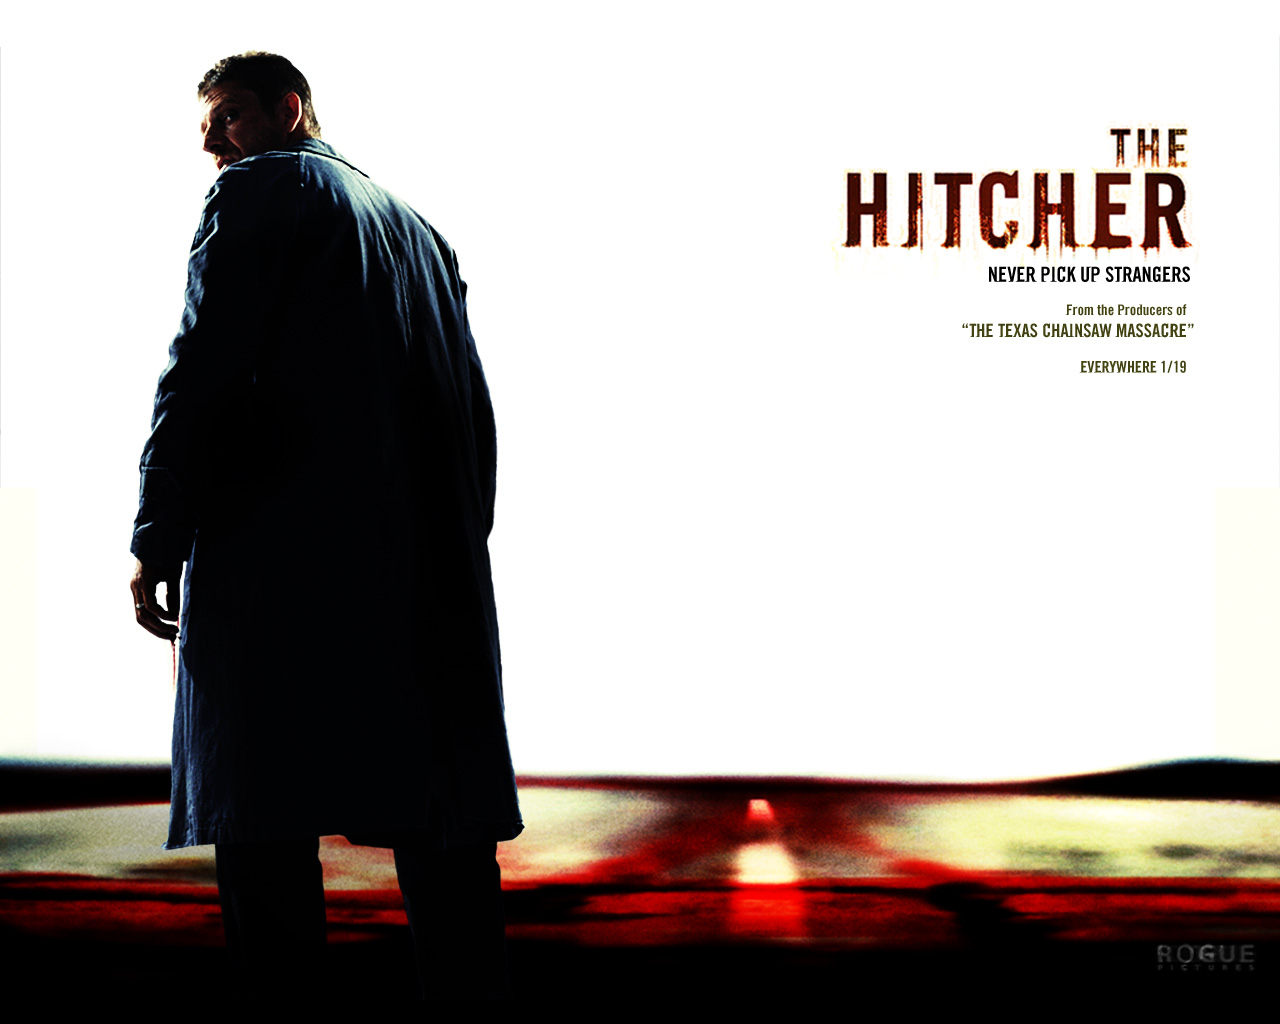 The Hitcher (2007) Slasher/Thriller